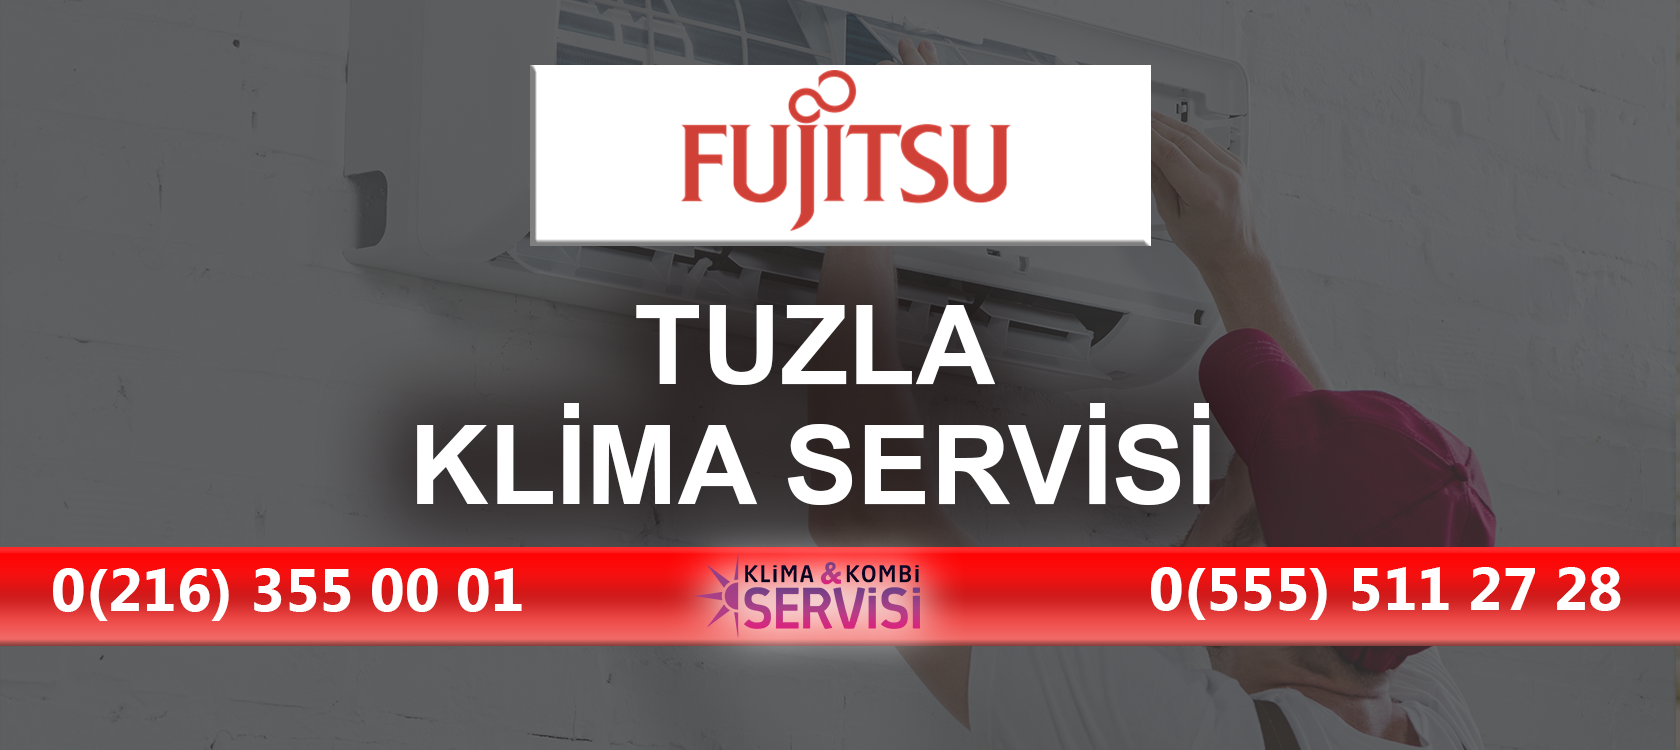 Tuzla Fujitsu Klima Servisi